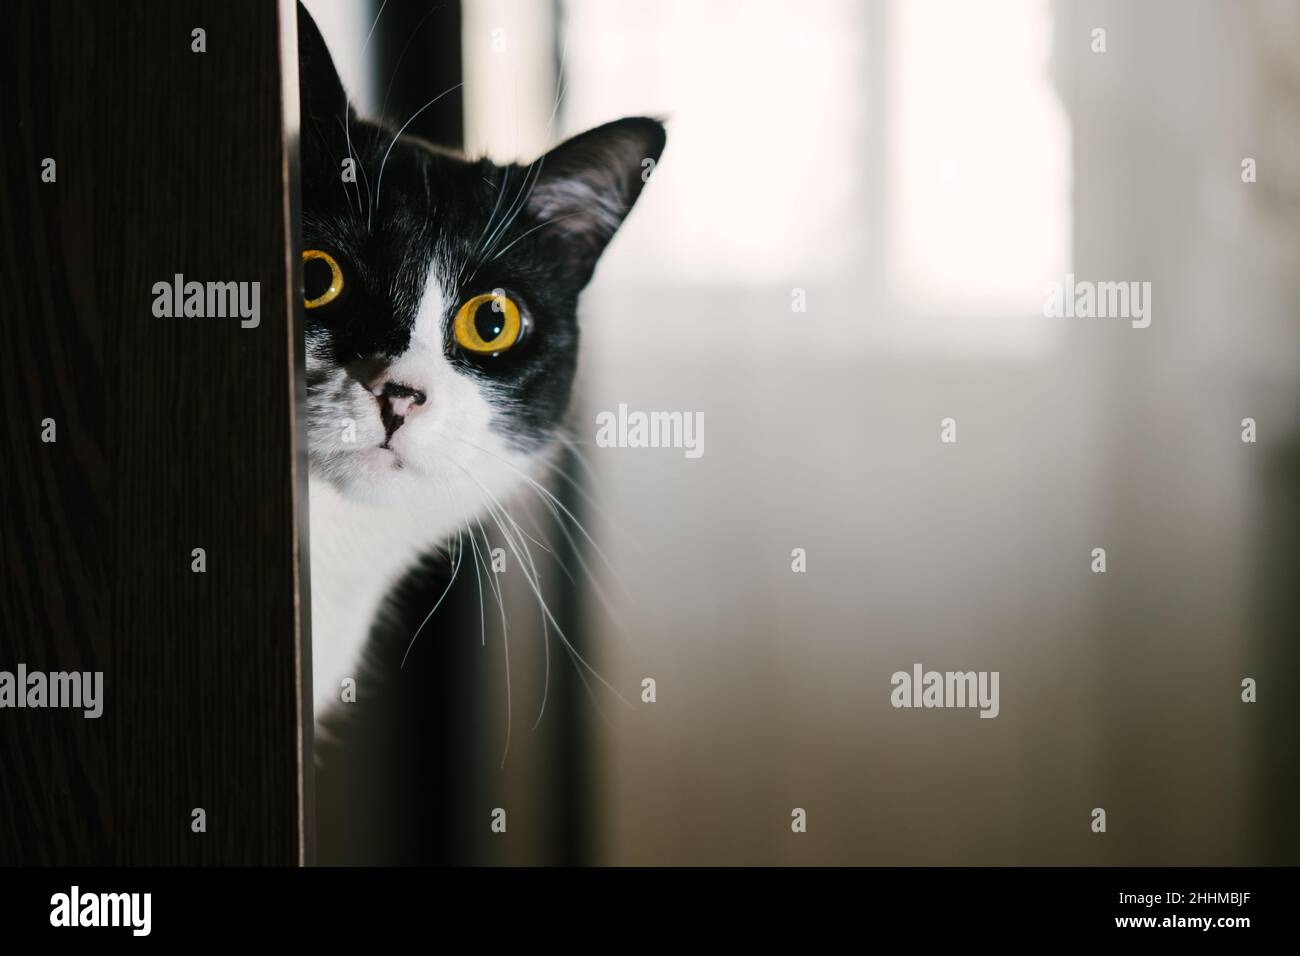 Divertente gatto tuxedo bianco e nero che guarda la macchina fotografica dallo scaffale. Foto Stock